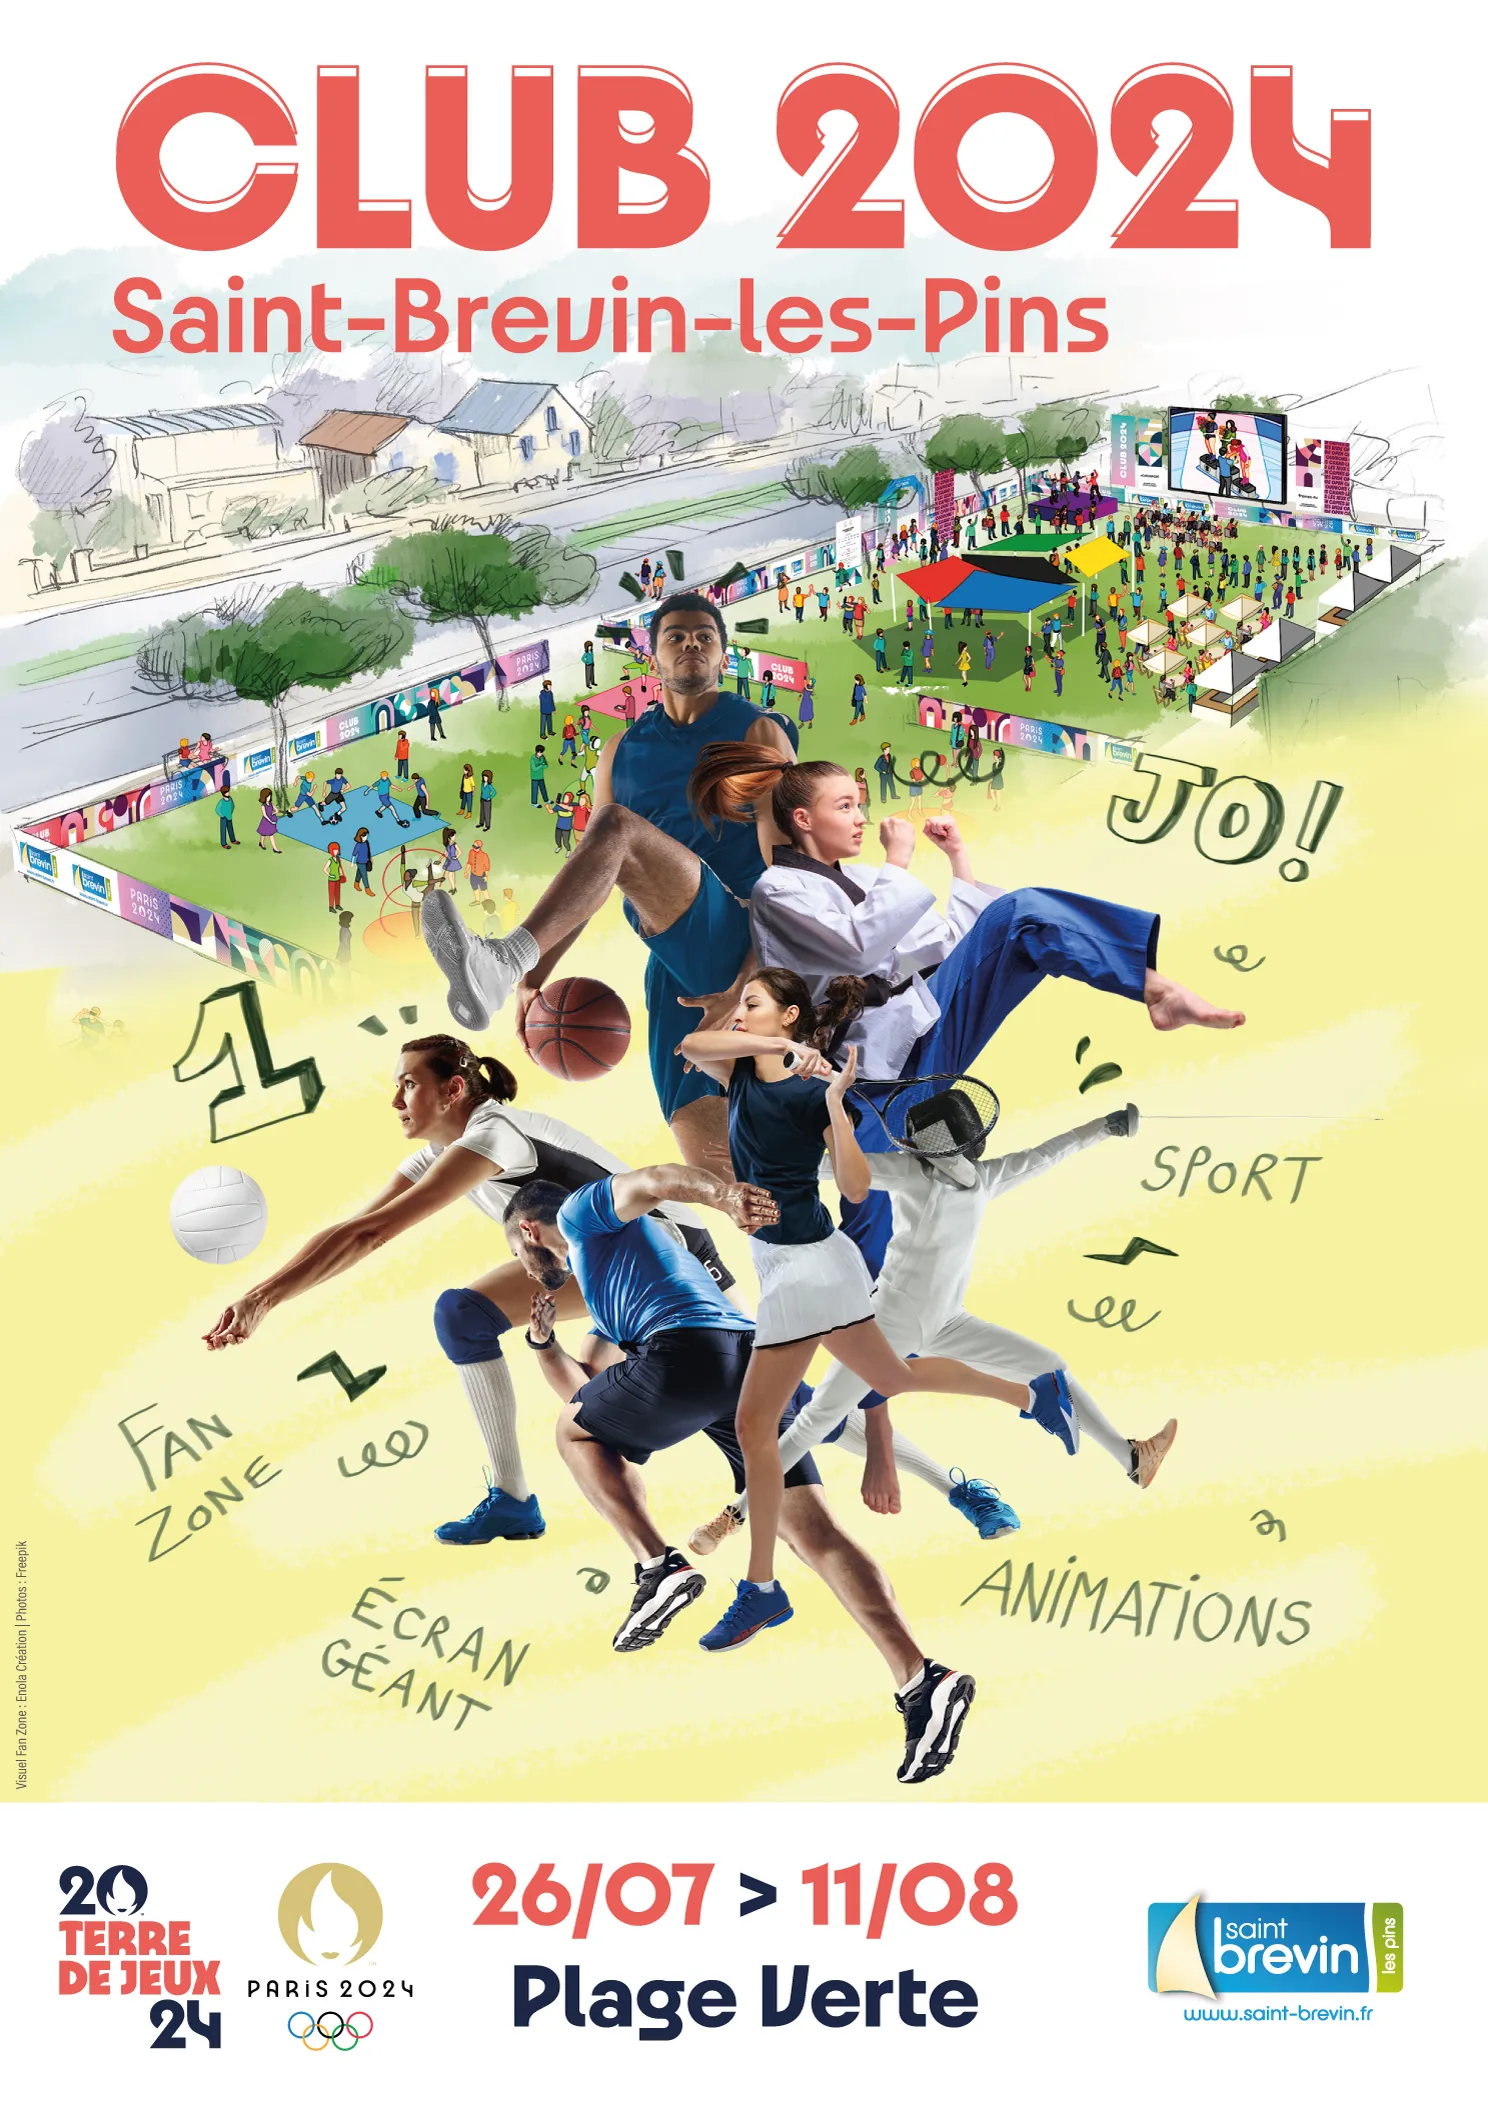 Image qui illustre: Club 2024 Jeux Olympiques à Saint-Brevin-les-Pins - 1